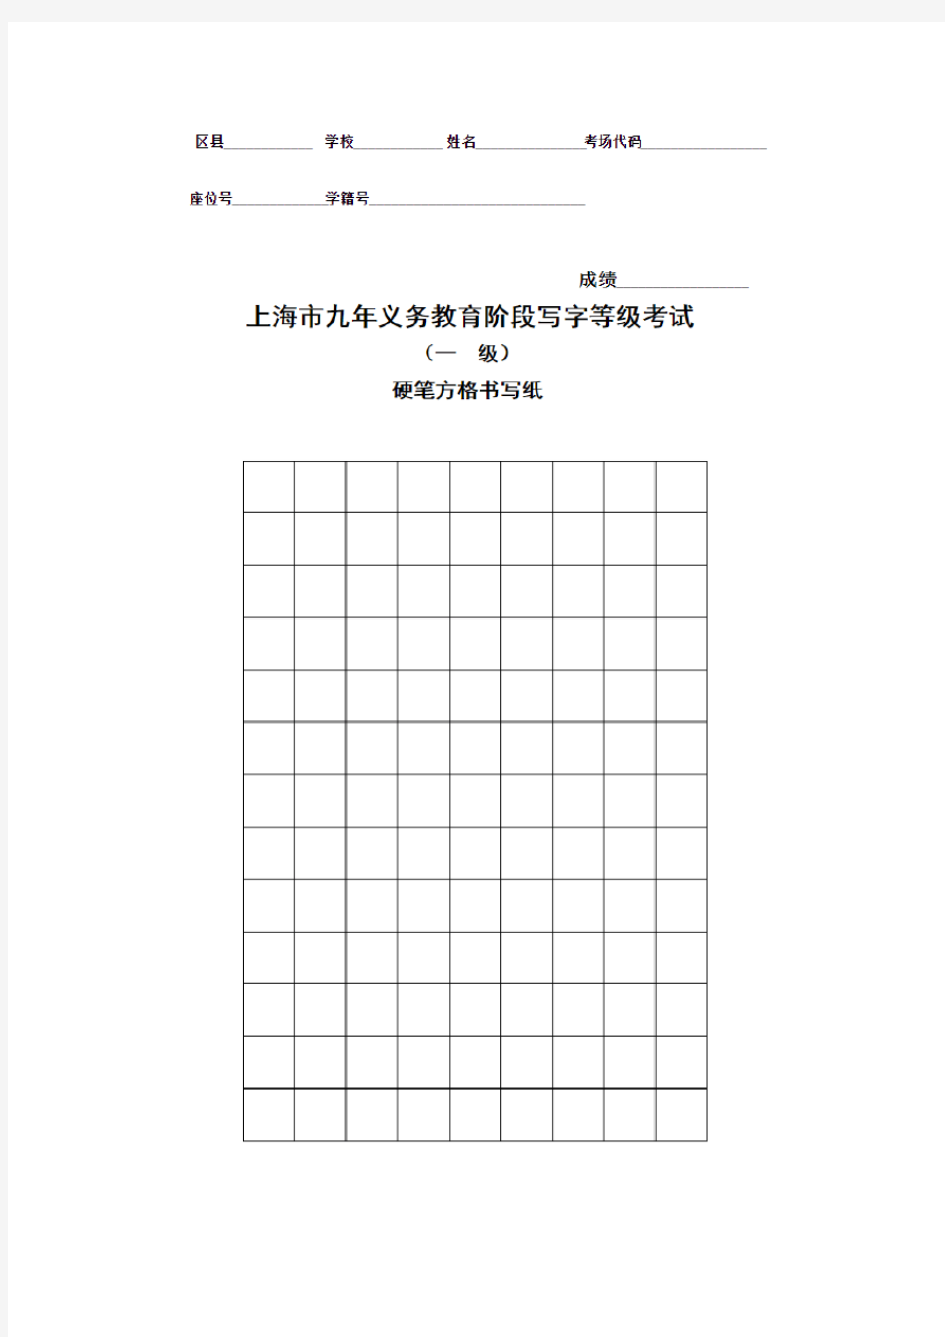 上海市九年义务教育阶段写字等级考试(一级)硬笔方格书写纸